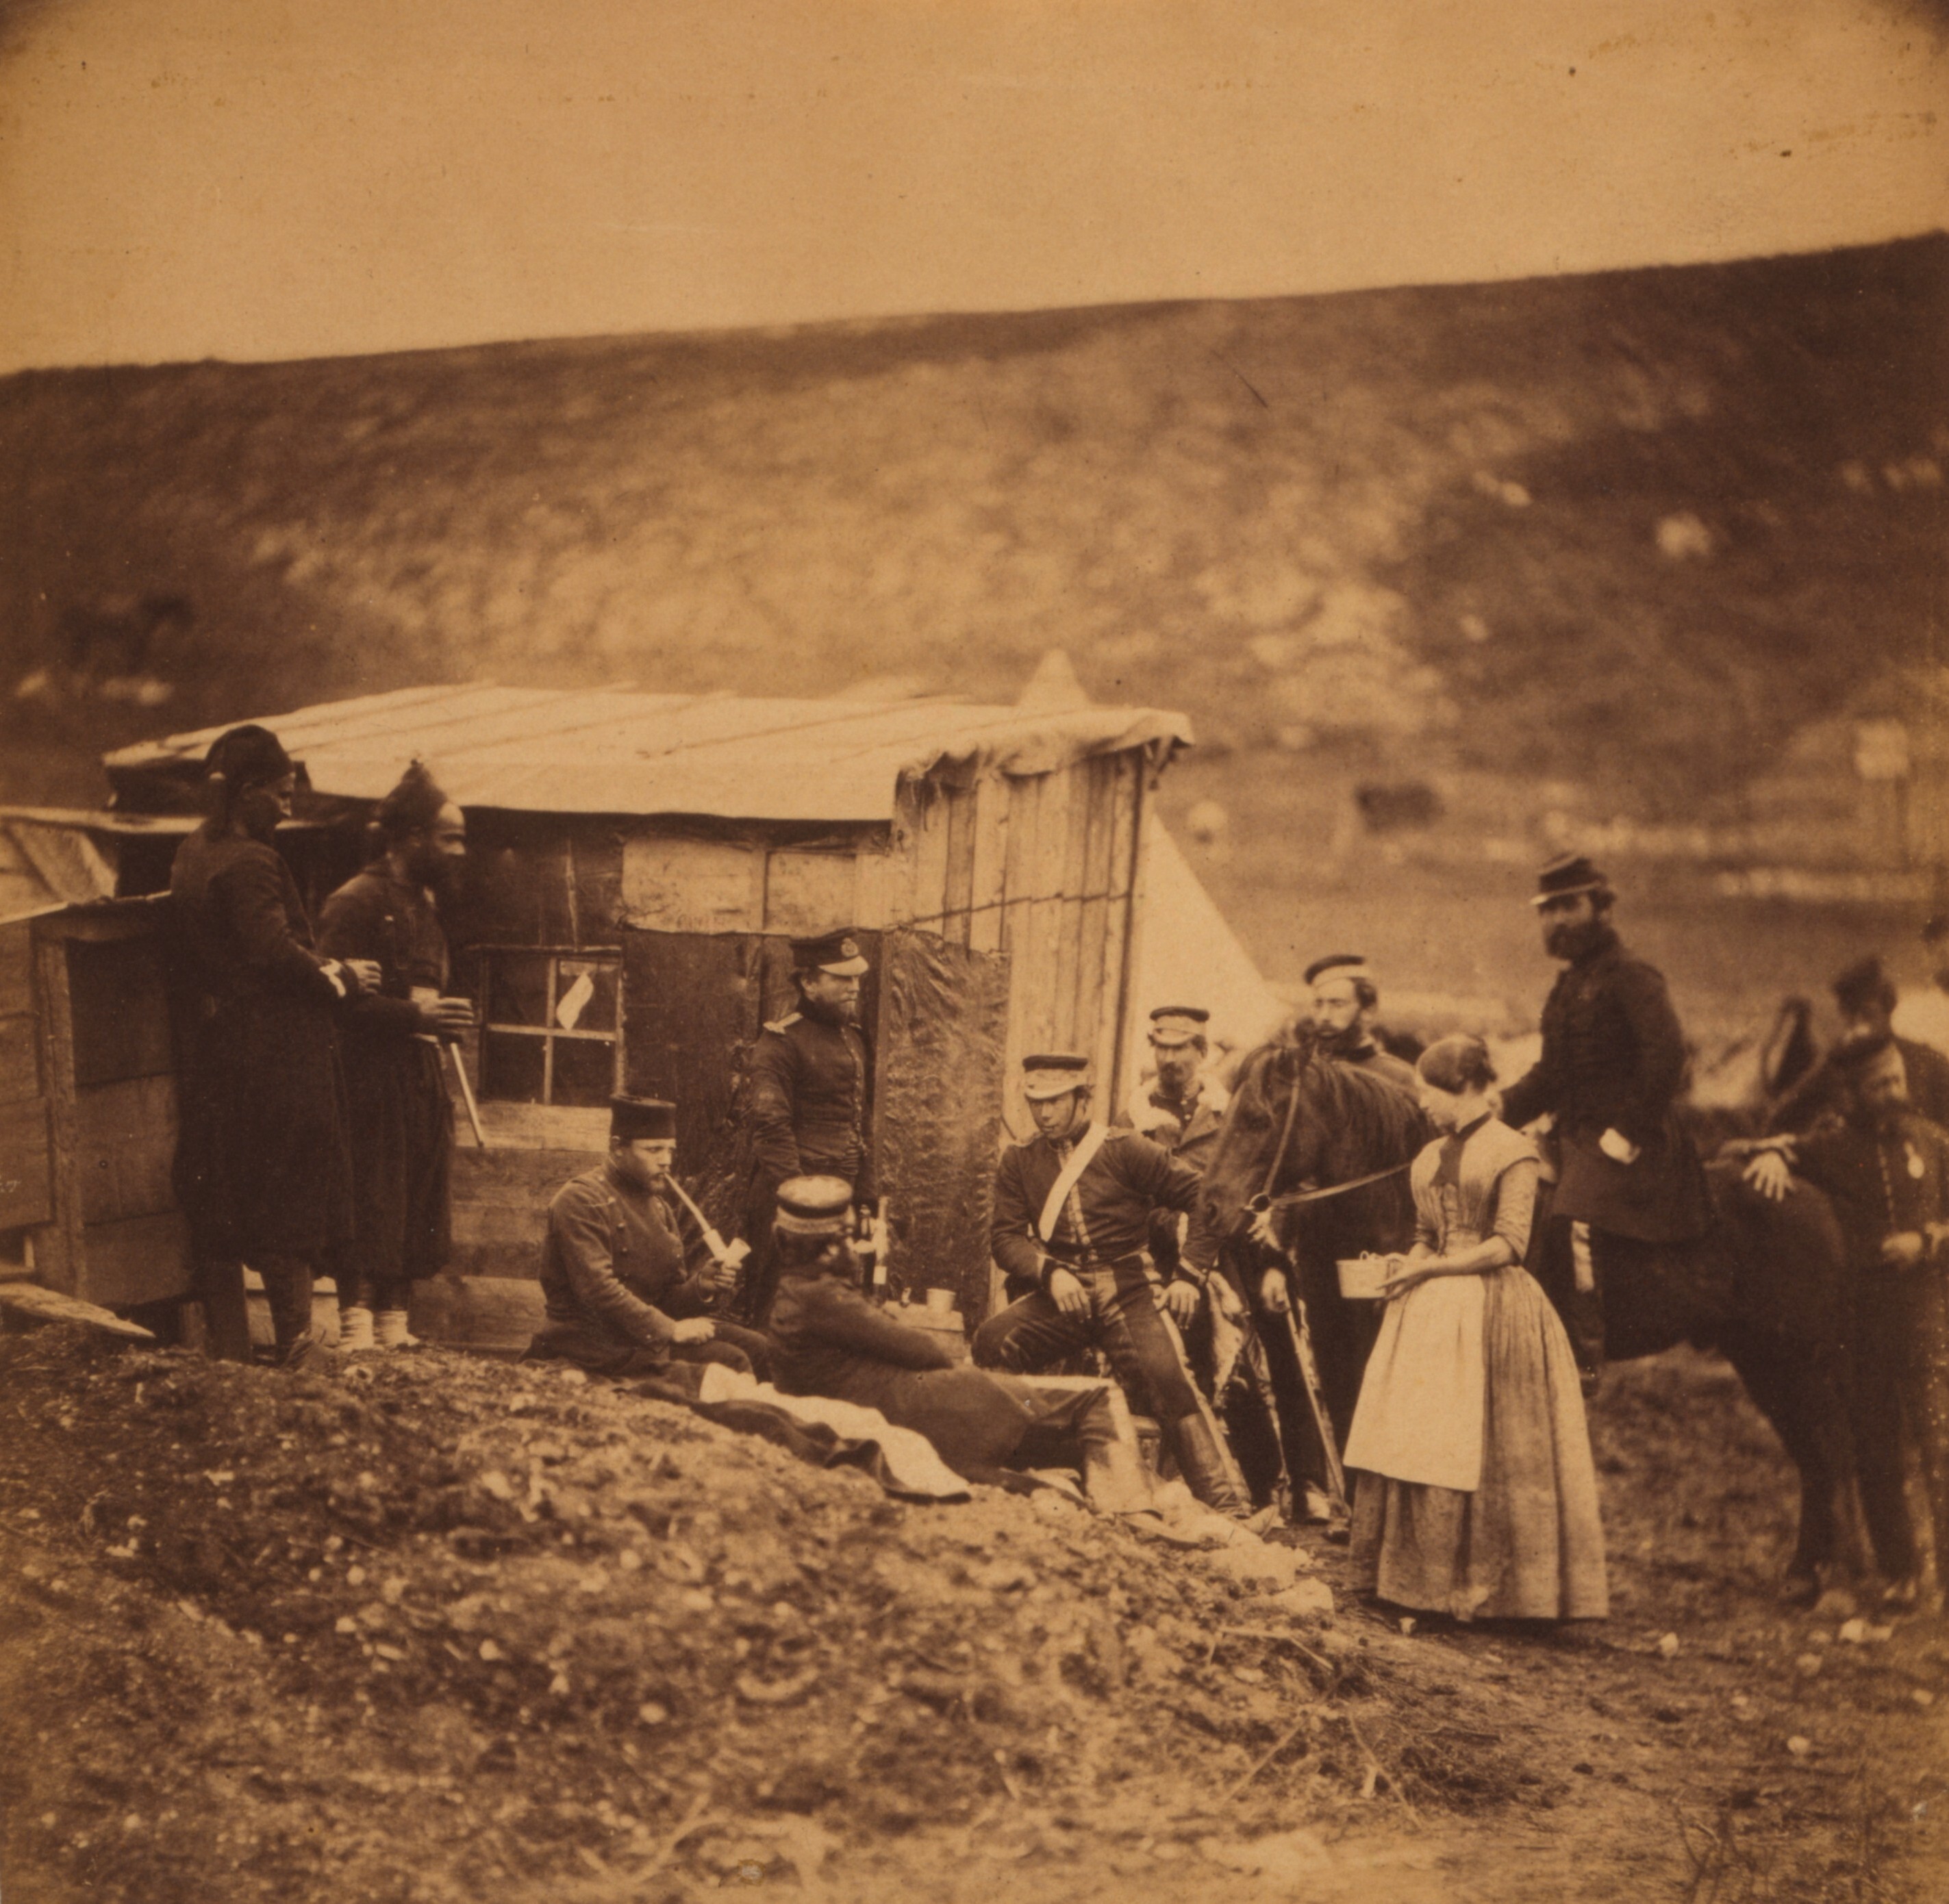 Лагерь 4-го драгунского полка, праздничная вечеринка, французы и англичане. Крымская война, 1855. Фотограф Роджер Фентон